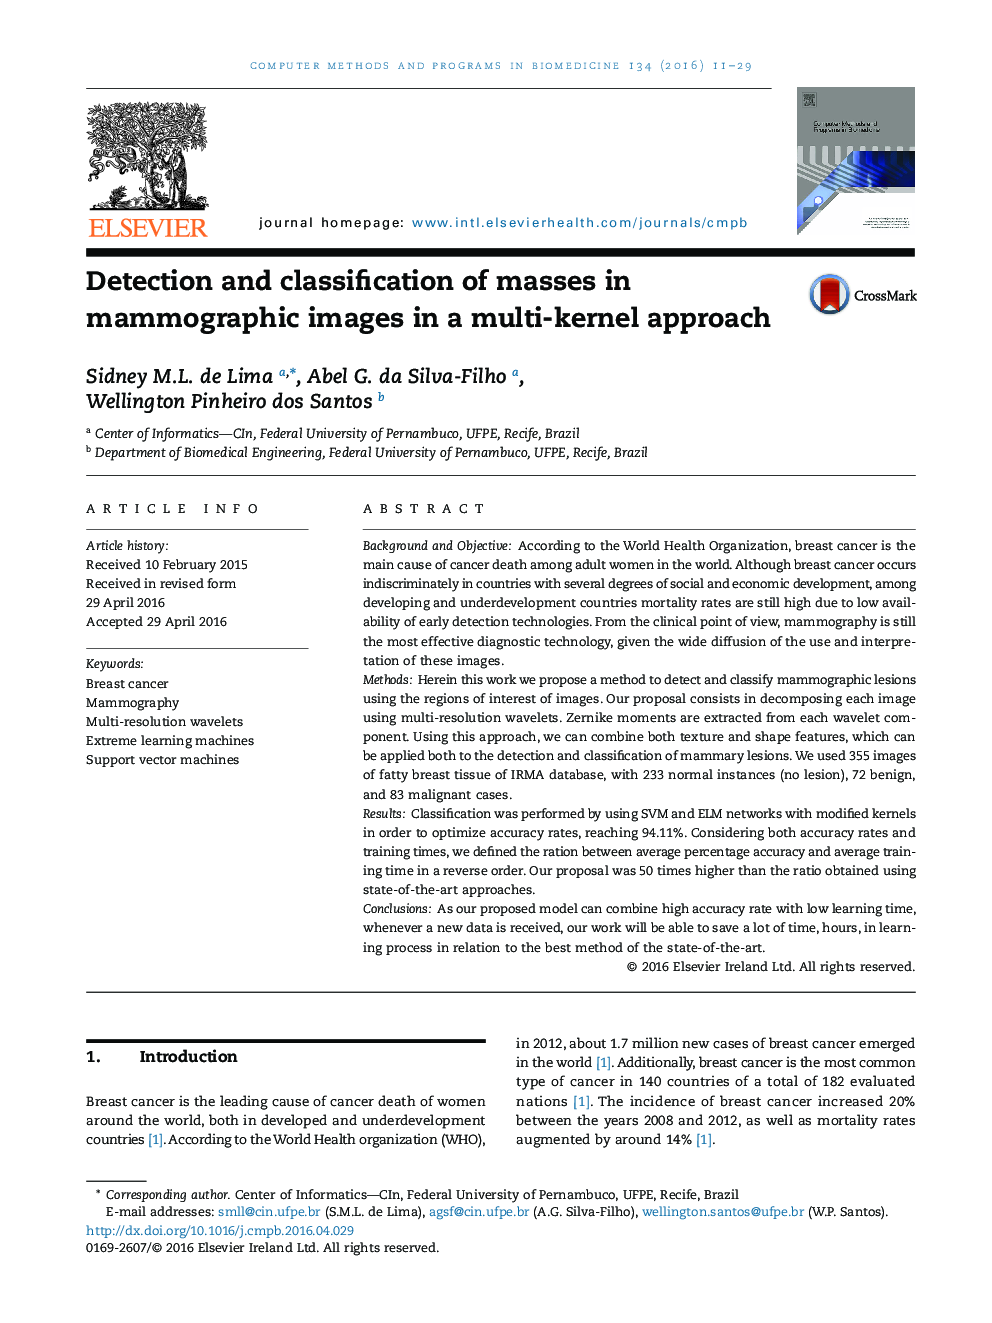 تشخیص و طبقه بندی توده ها در تصاویر ماموگرافی در یک رویکرد چندهسته ای